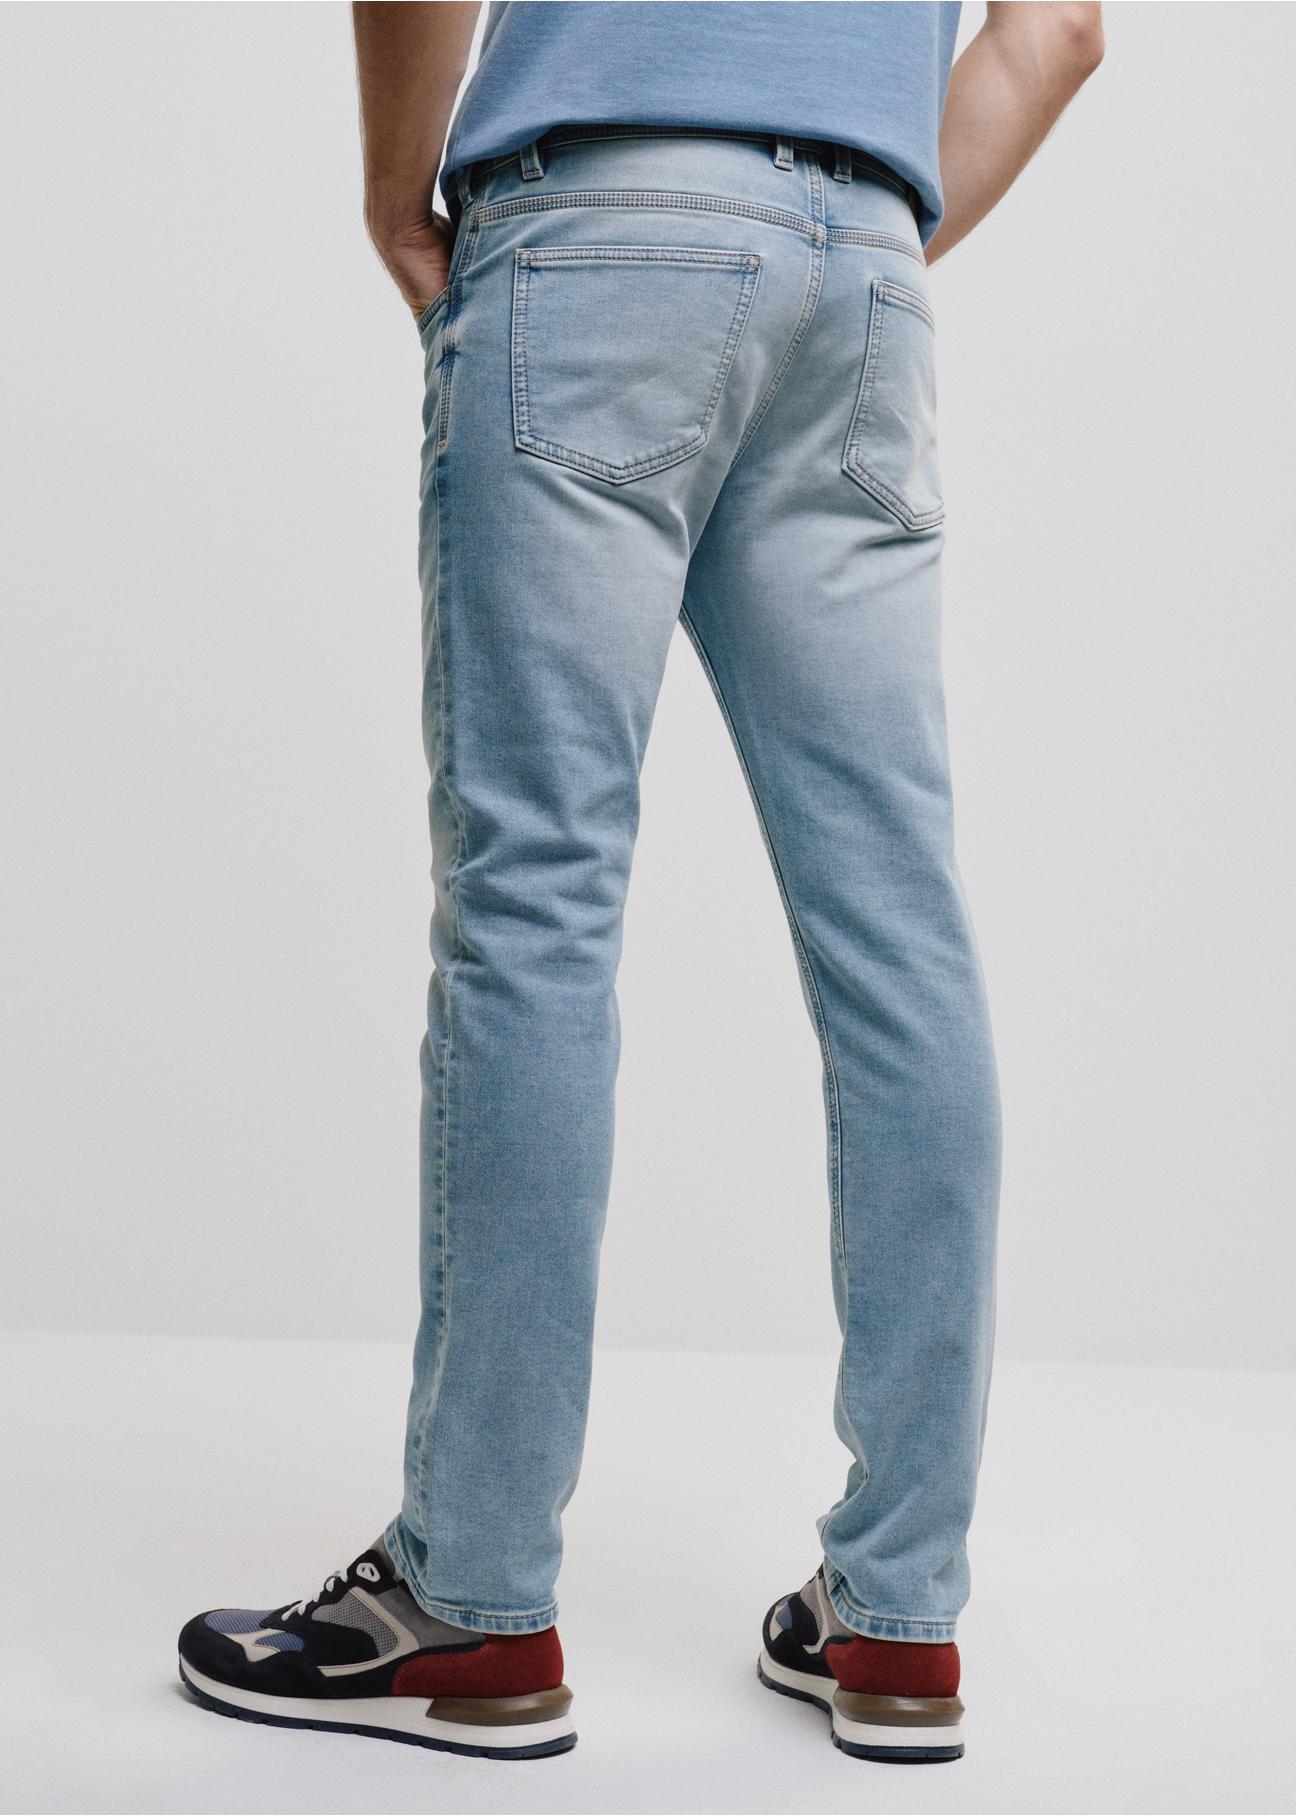 Niebieskie spodnie jeansowe męskie JEAMT-0021-61(W24)